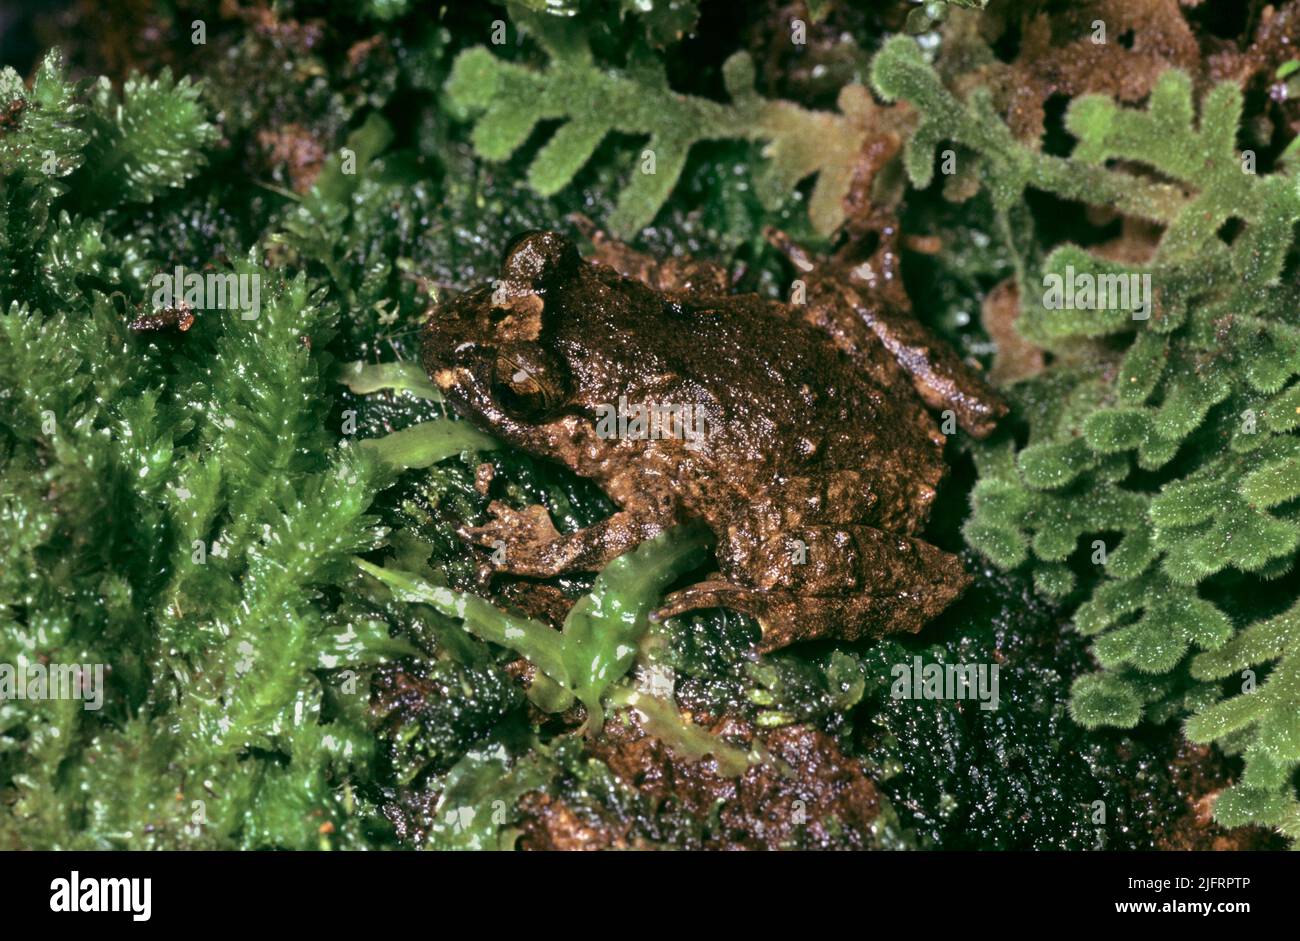 Hochstetters Frog (Leiopelma hochstetteri) Nuova Zelanda. Endemico. Una piccola rana semi-acquatica ed una delle sole quattro rimanenti native endemiche della Nuova Zelanda Foto Stock